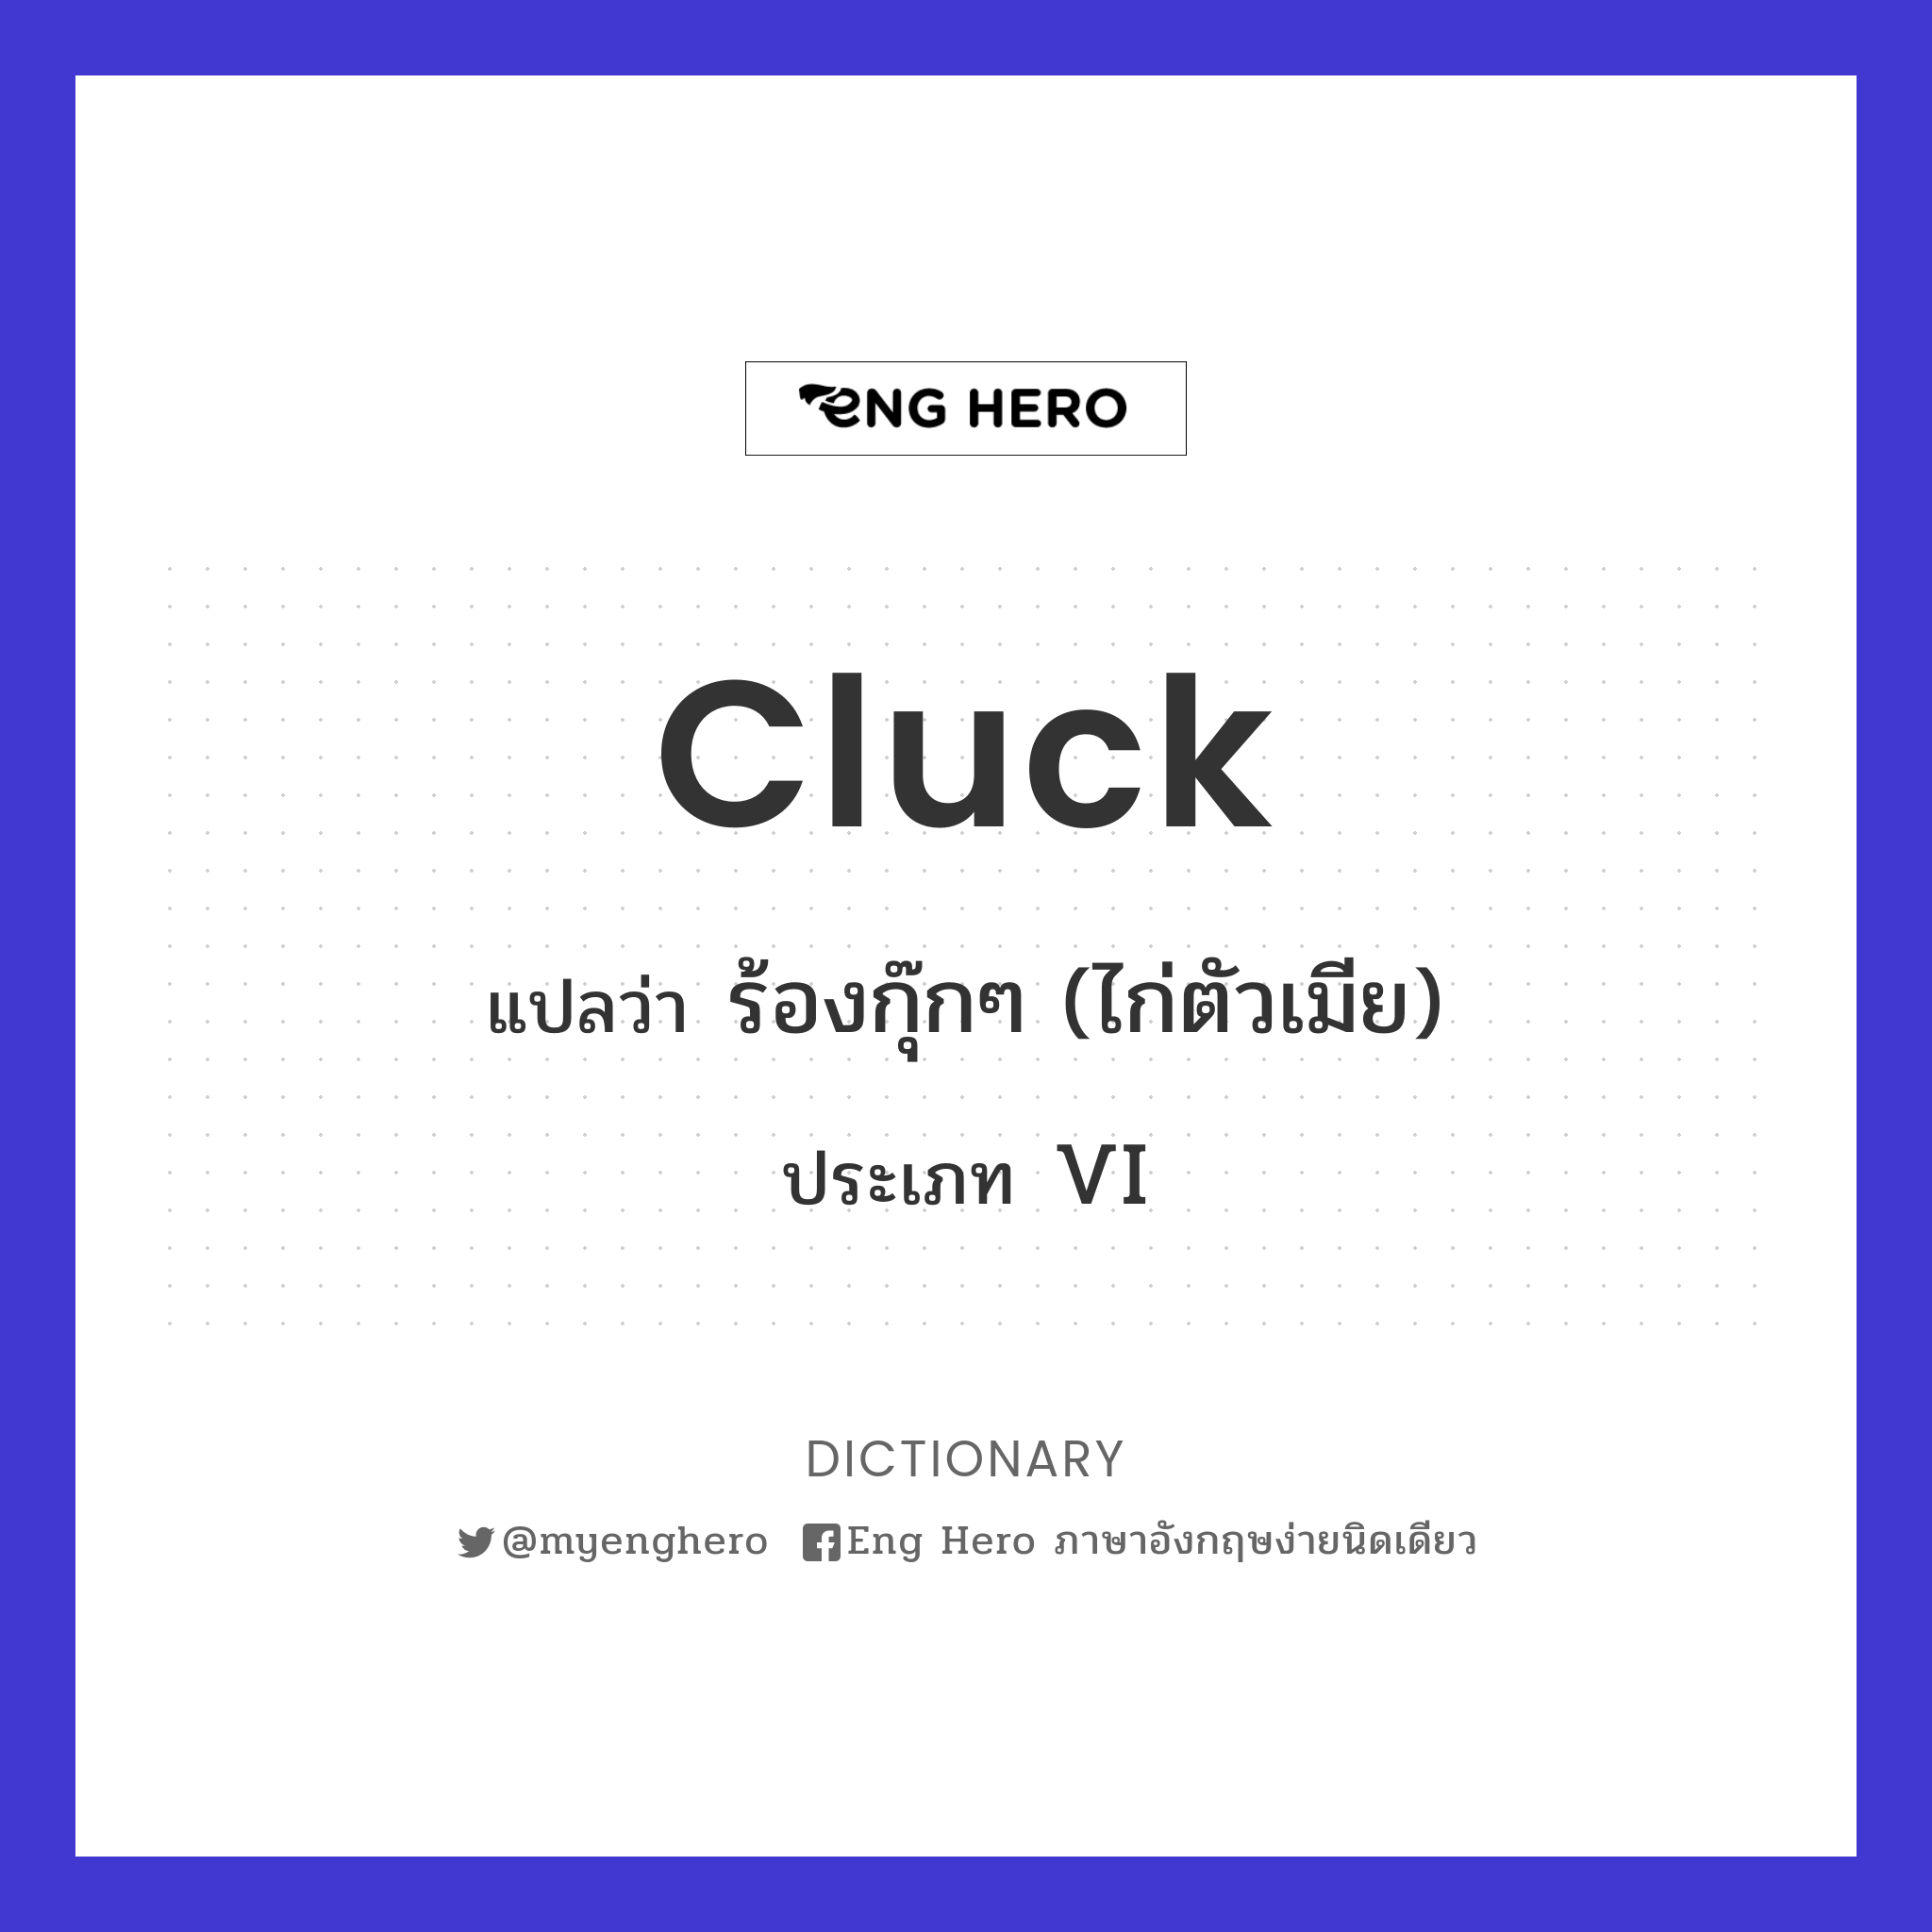 cluck